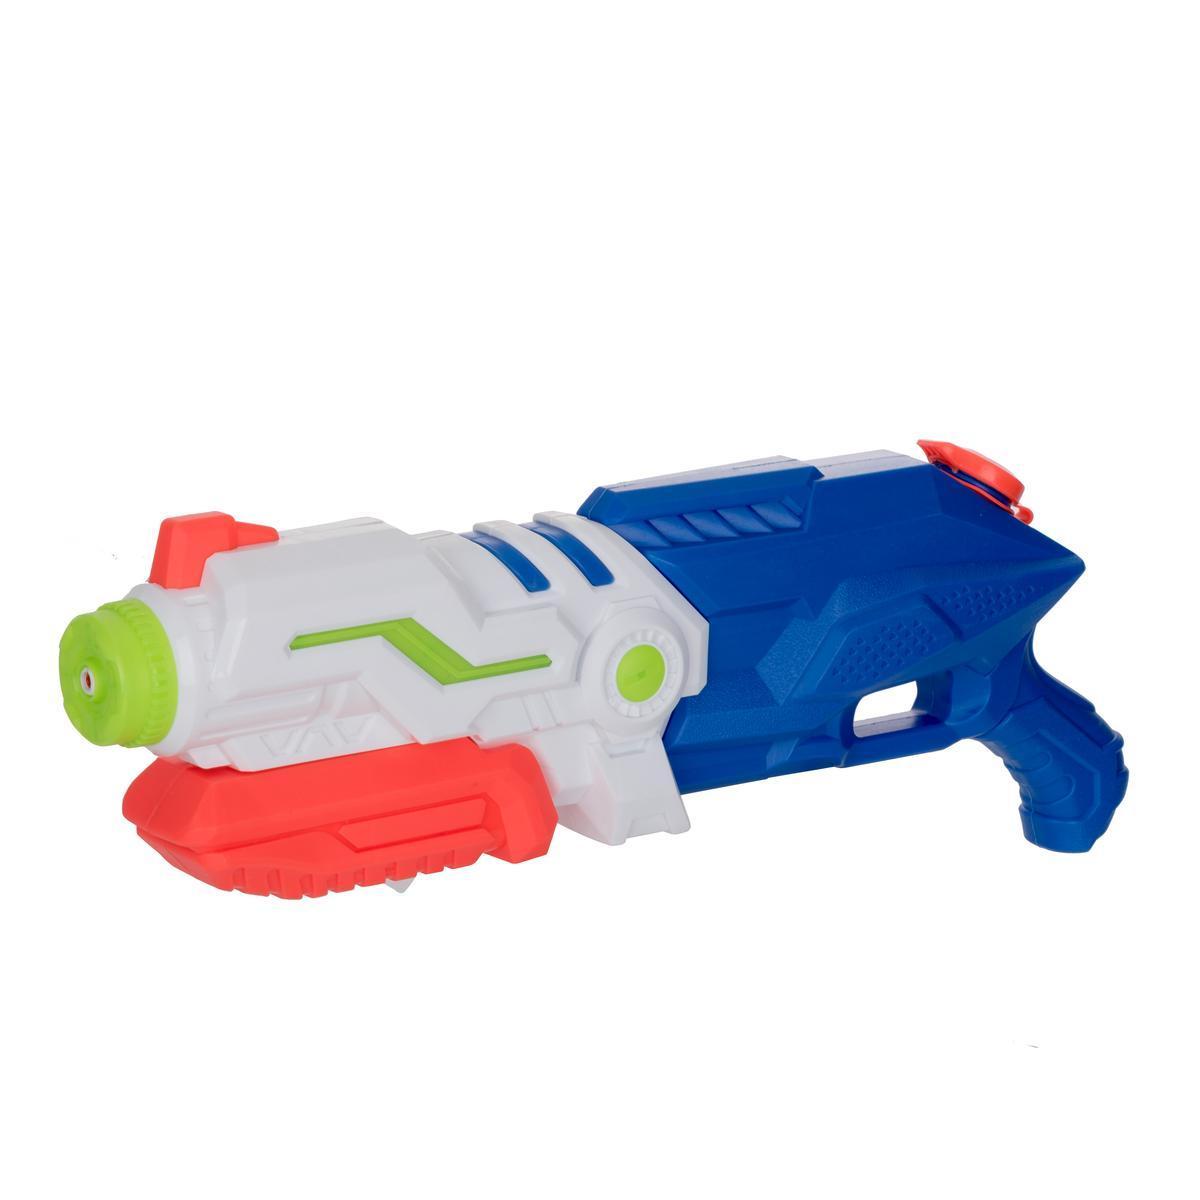 Pistolet à eau - Longueur 47 cm - Différents coloris - Multicolore - YOU KIDS